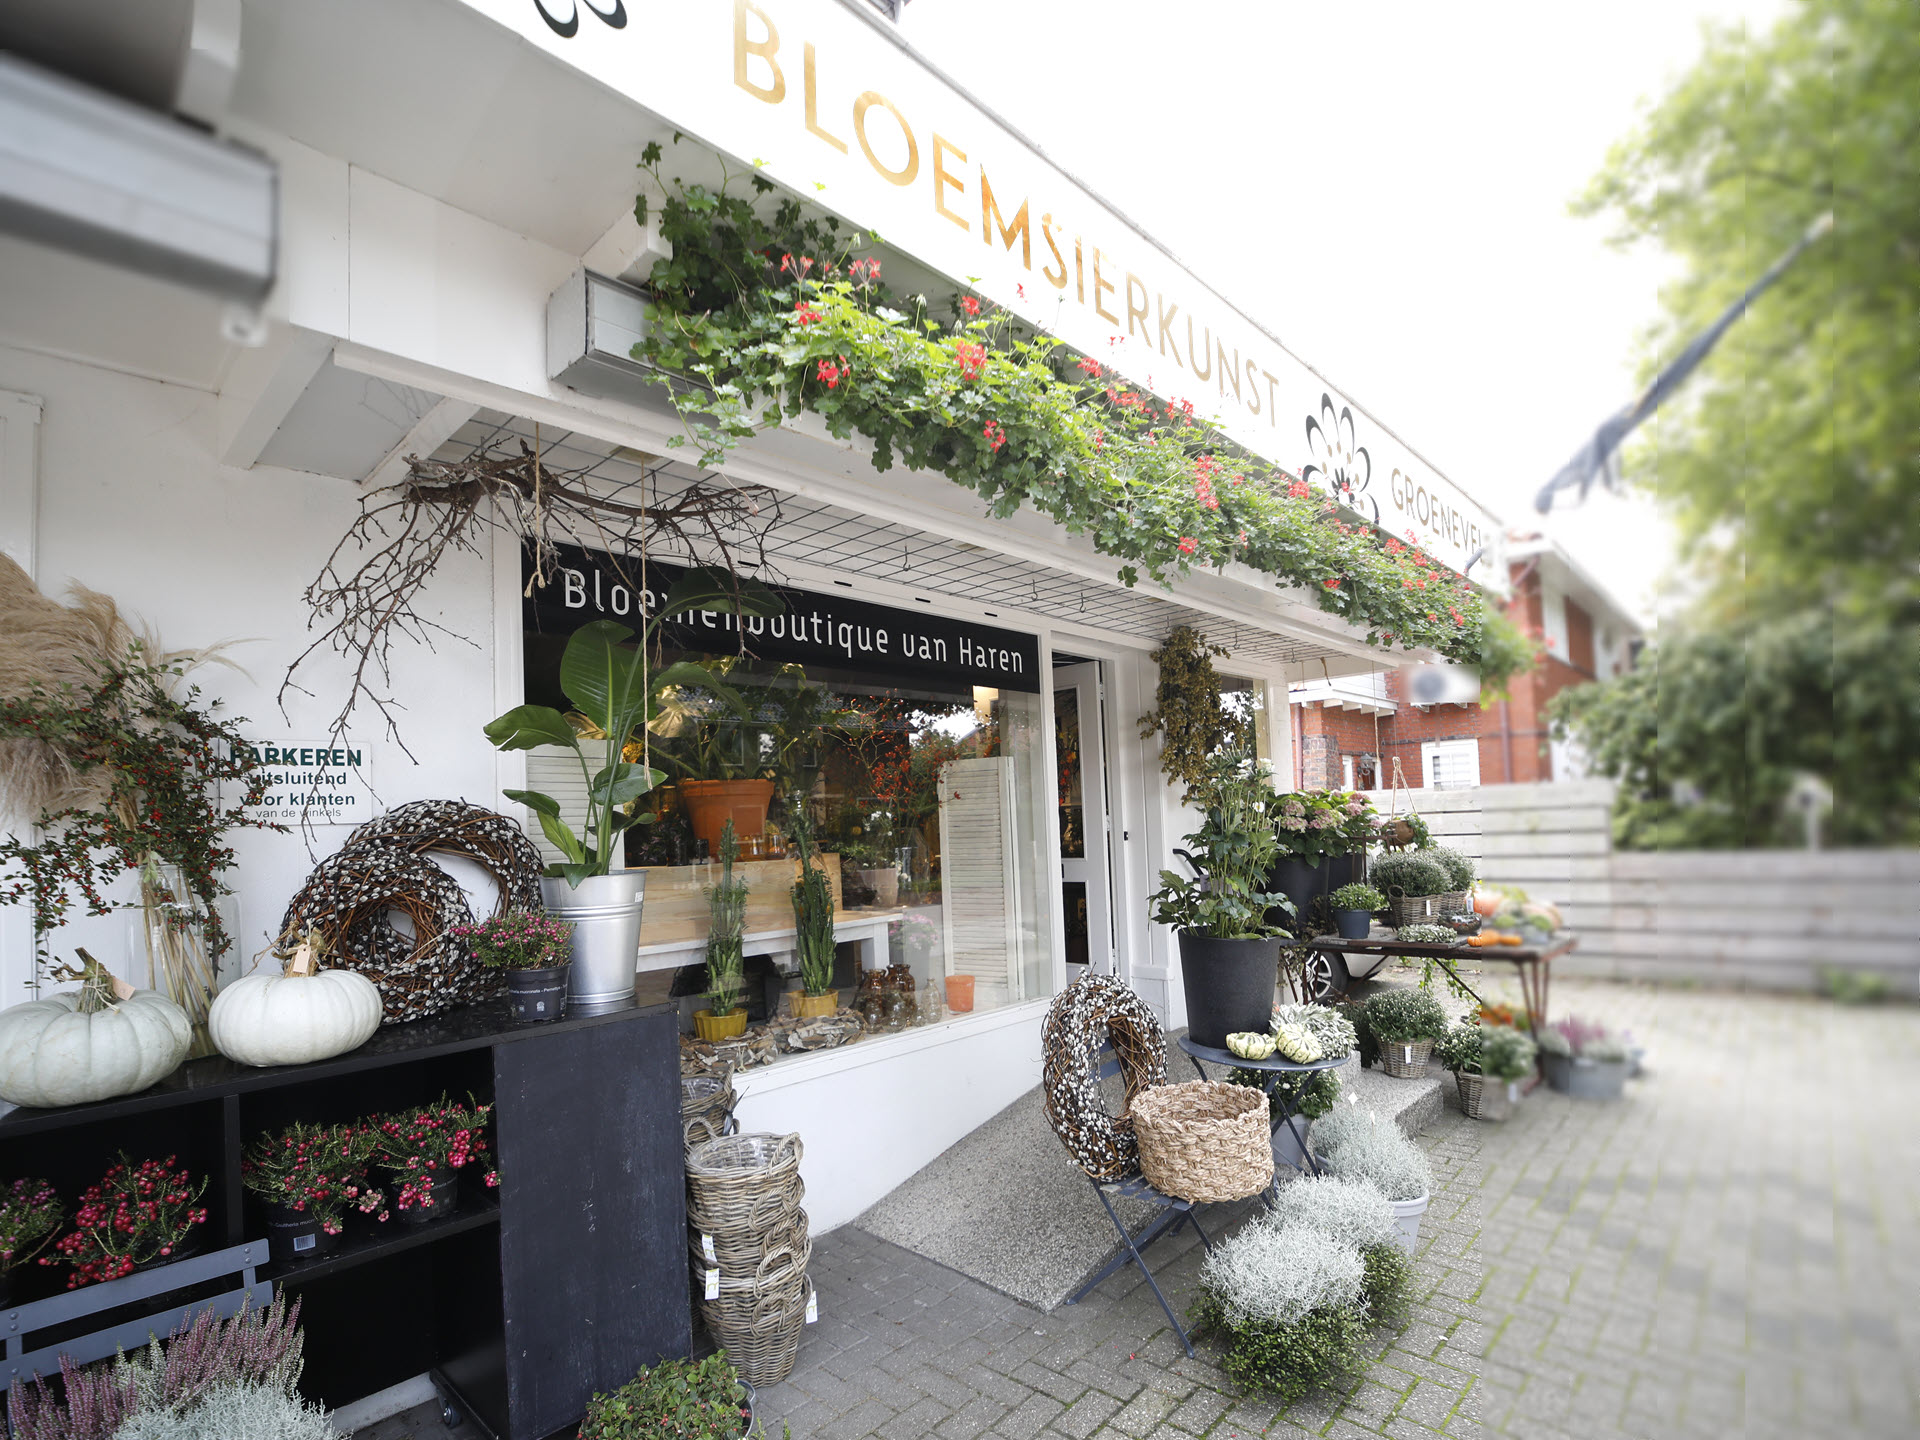 Bloemsierkunst Groeneveld bloemist in Haren / Groningen sinds 1973